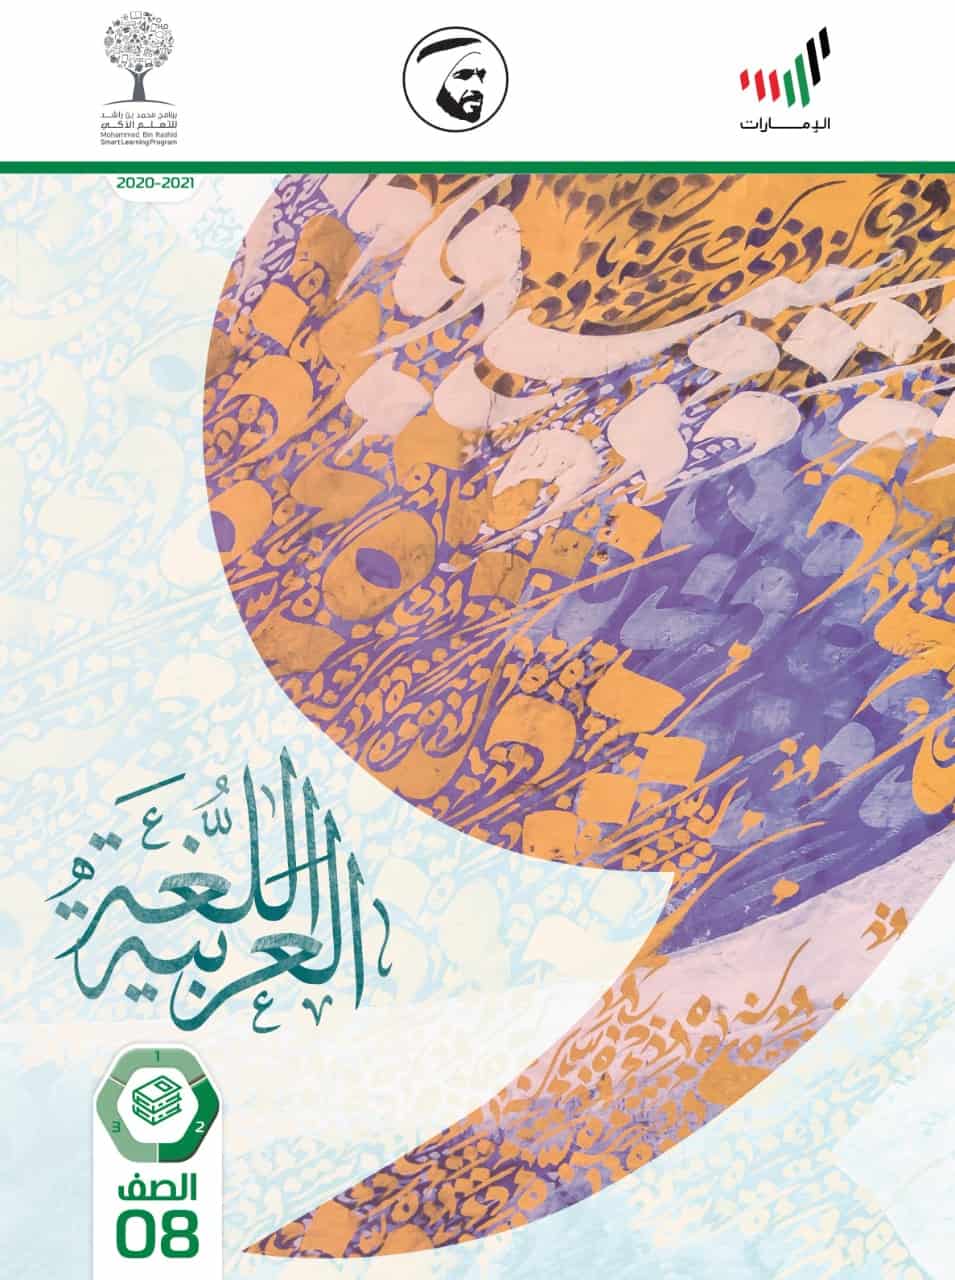 كتاب الطالب الفصل الدراسي الثاني 2020-2021 الصف الثامن مادة المادة اللغة العربية 